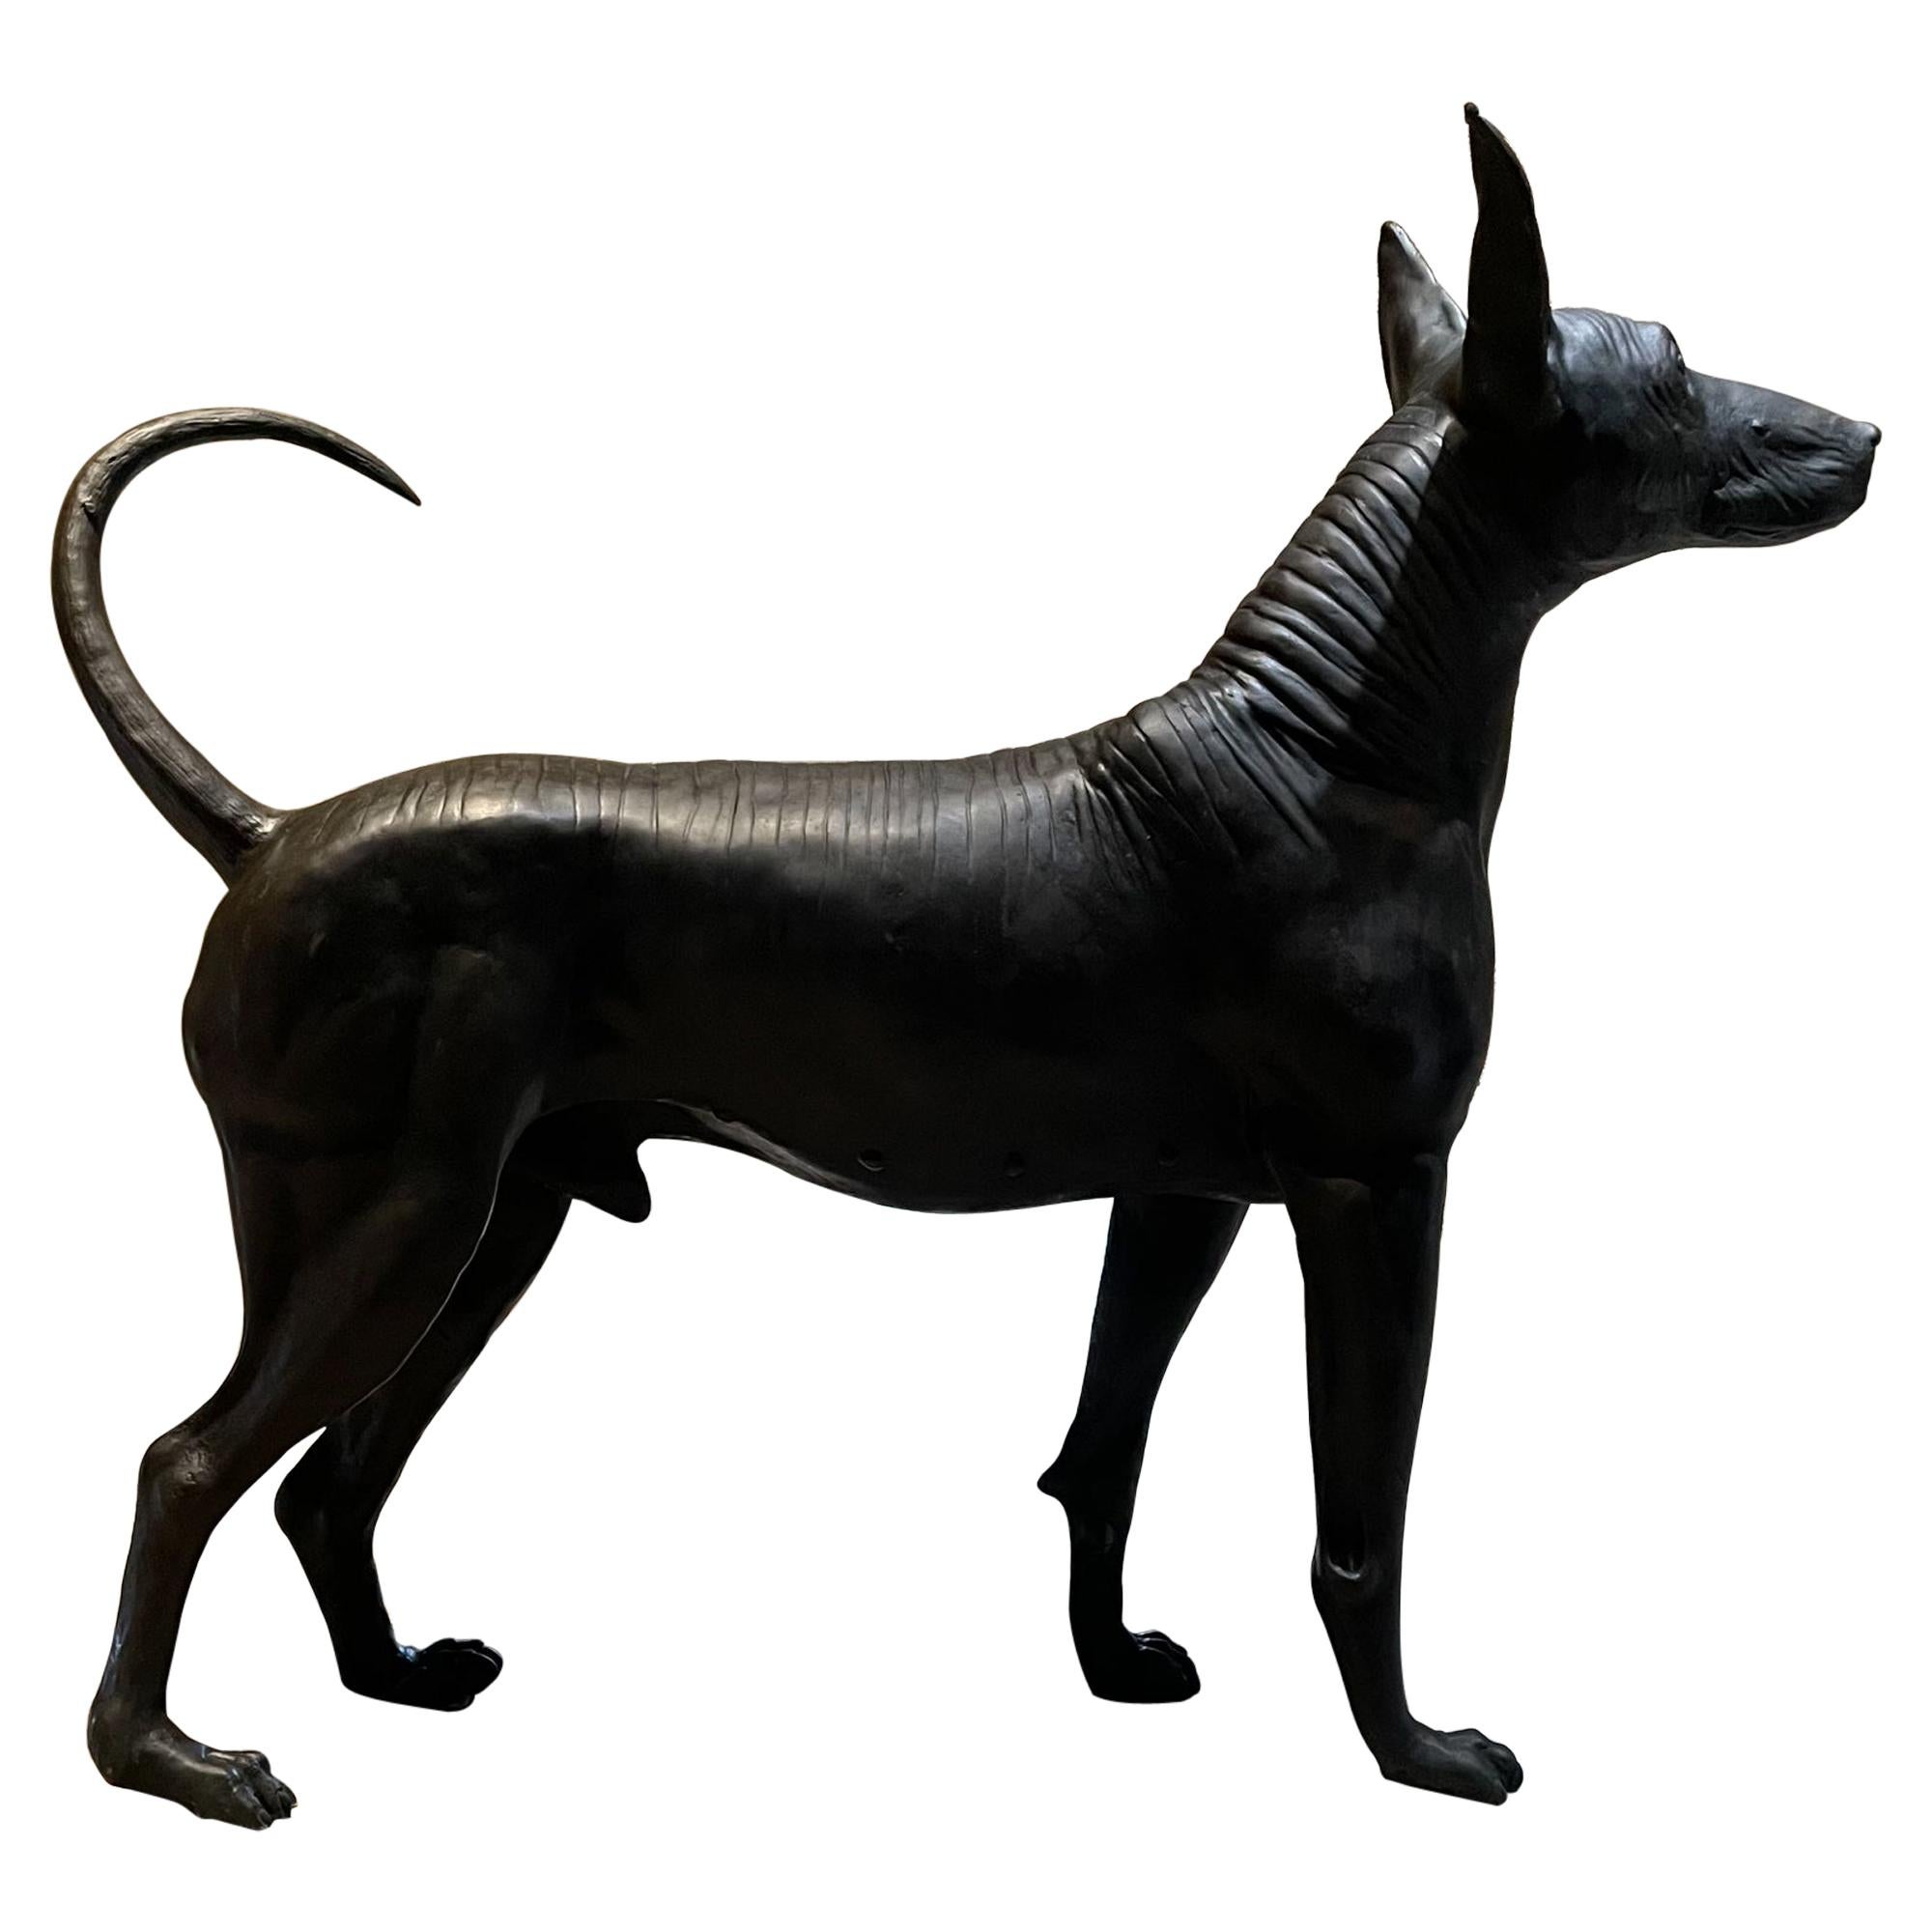 AMBIANIC präsentiert
Mehr als erstaunlich lebensechte Skulptur mexikanischen haarlosen Hund Xoloitzcuintli Xolo in Cast Bronze.
Einfach brillante Xoloitzcuintle-Skulptur des mexikanischen Bildhauers Guillermo Castaño, international bekannter